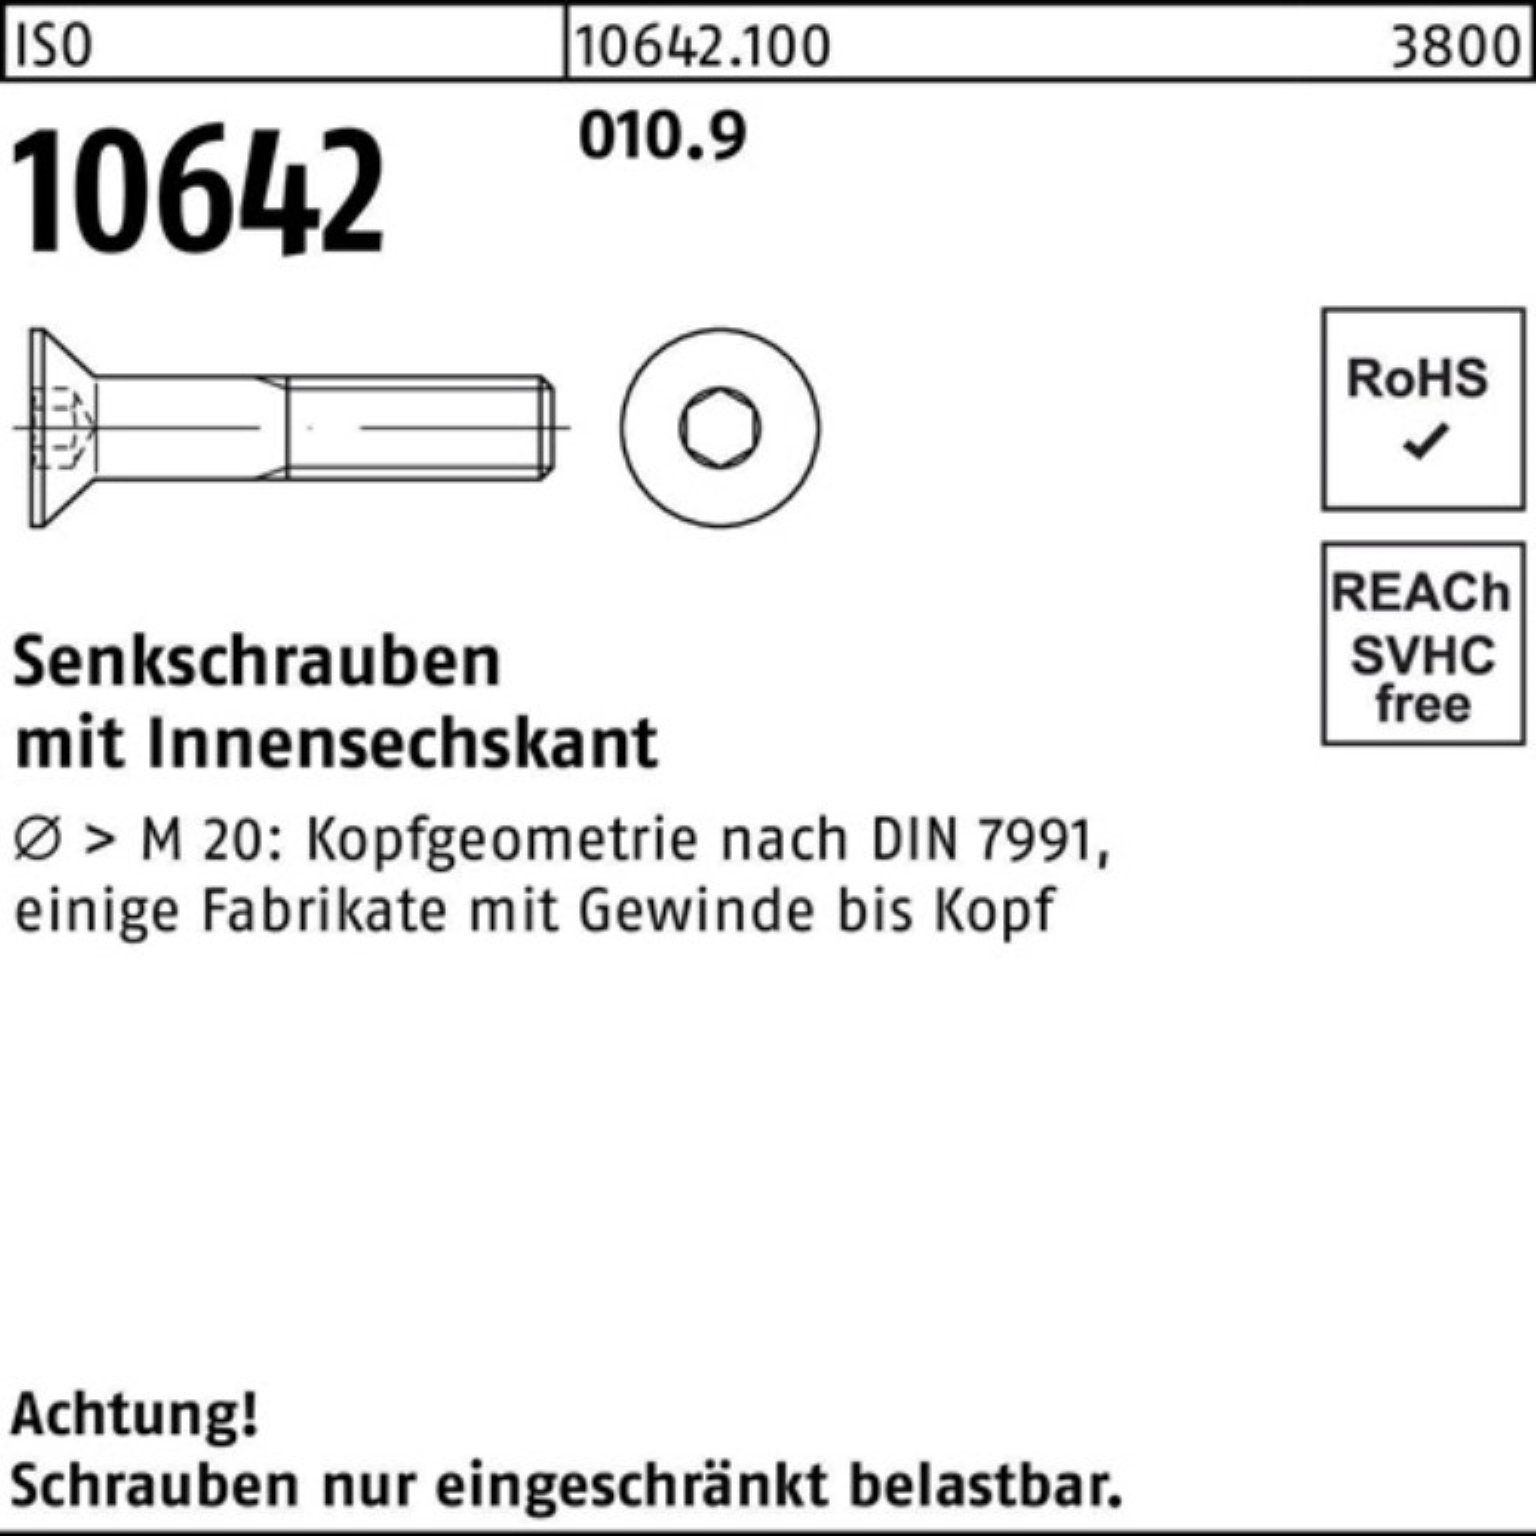 6 Senkschraube Senkschraube Stück 10642 010.9 ISO M3x ISO Pack Reyher 500 Innen-6kt 500er